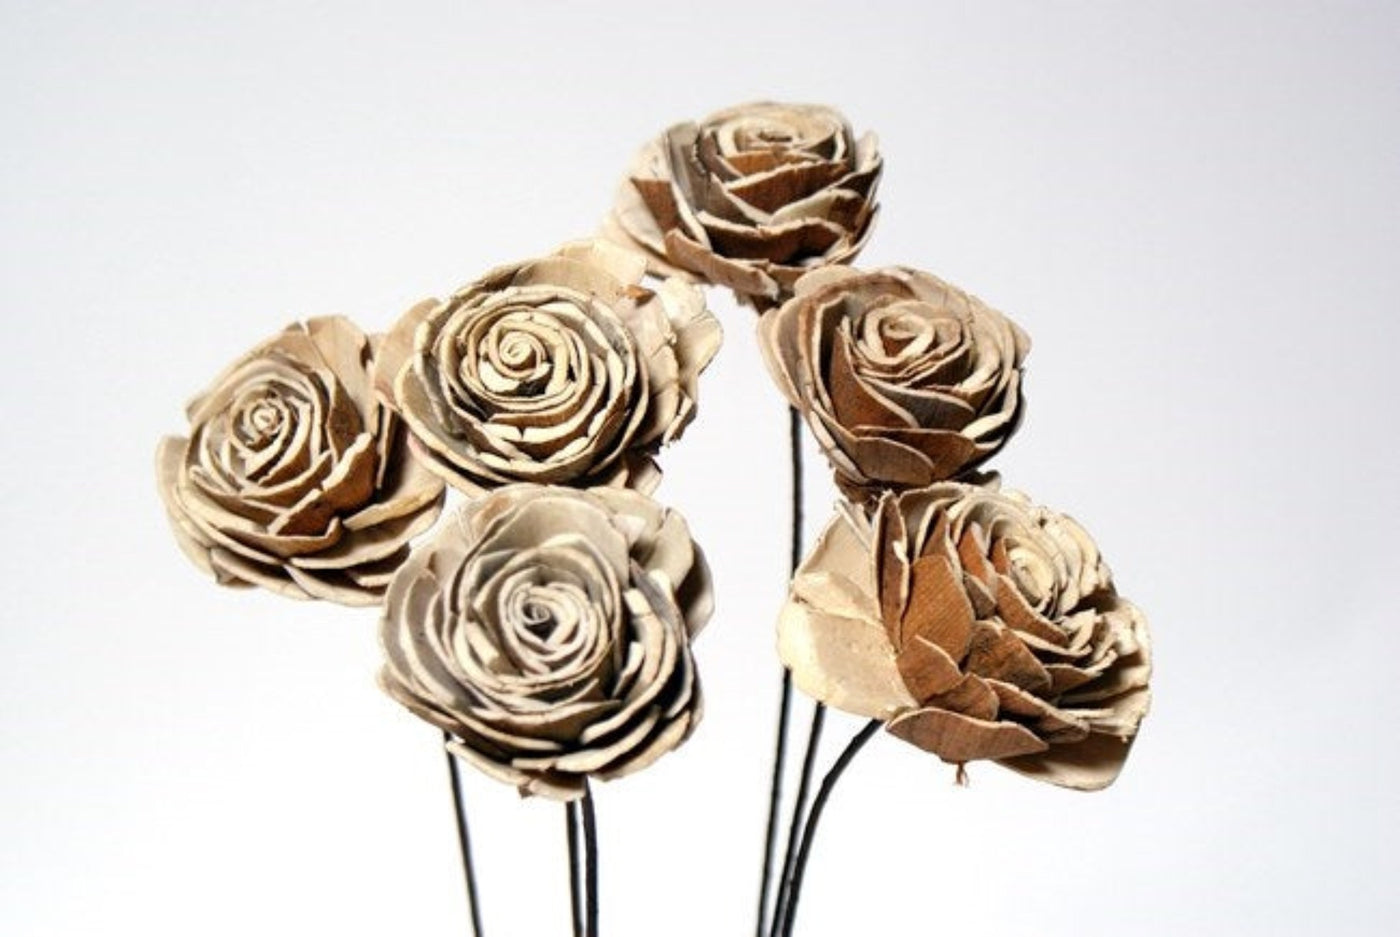 Sola Roses, Small- 6-rose bundle, 2.5" diameter.